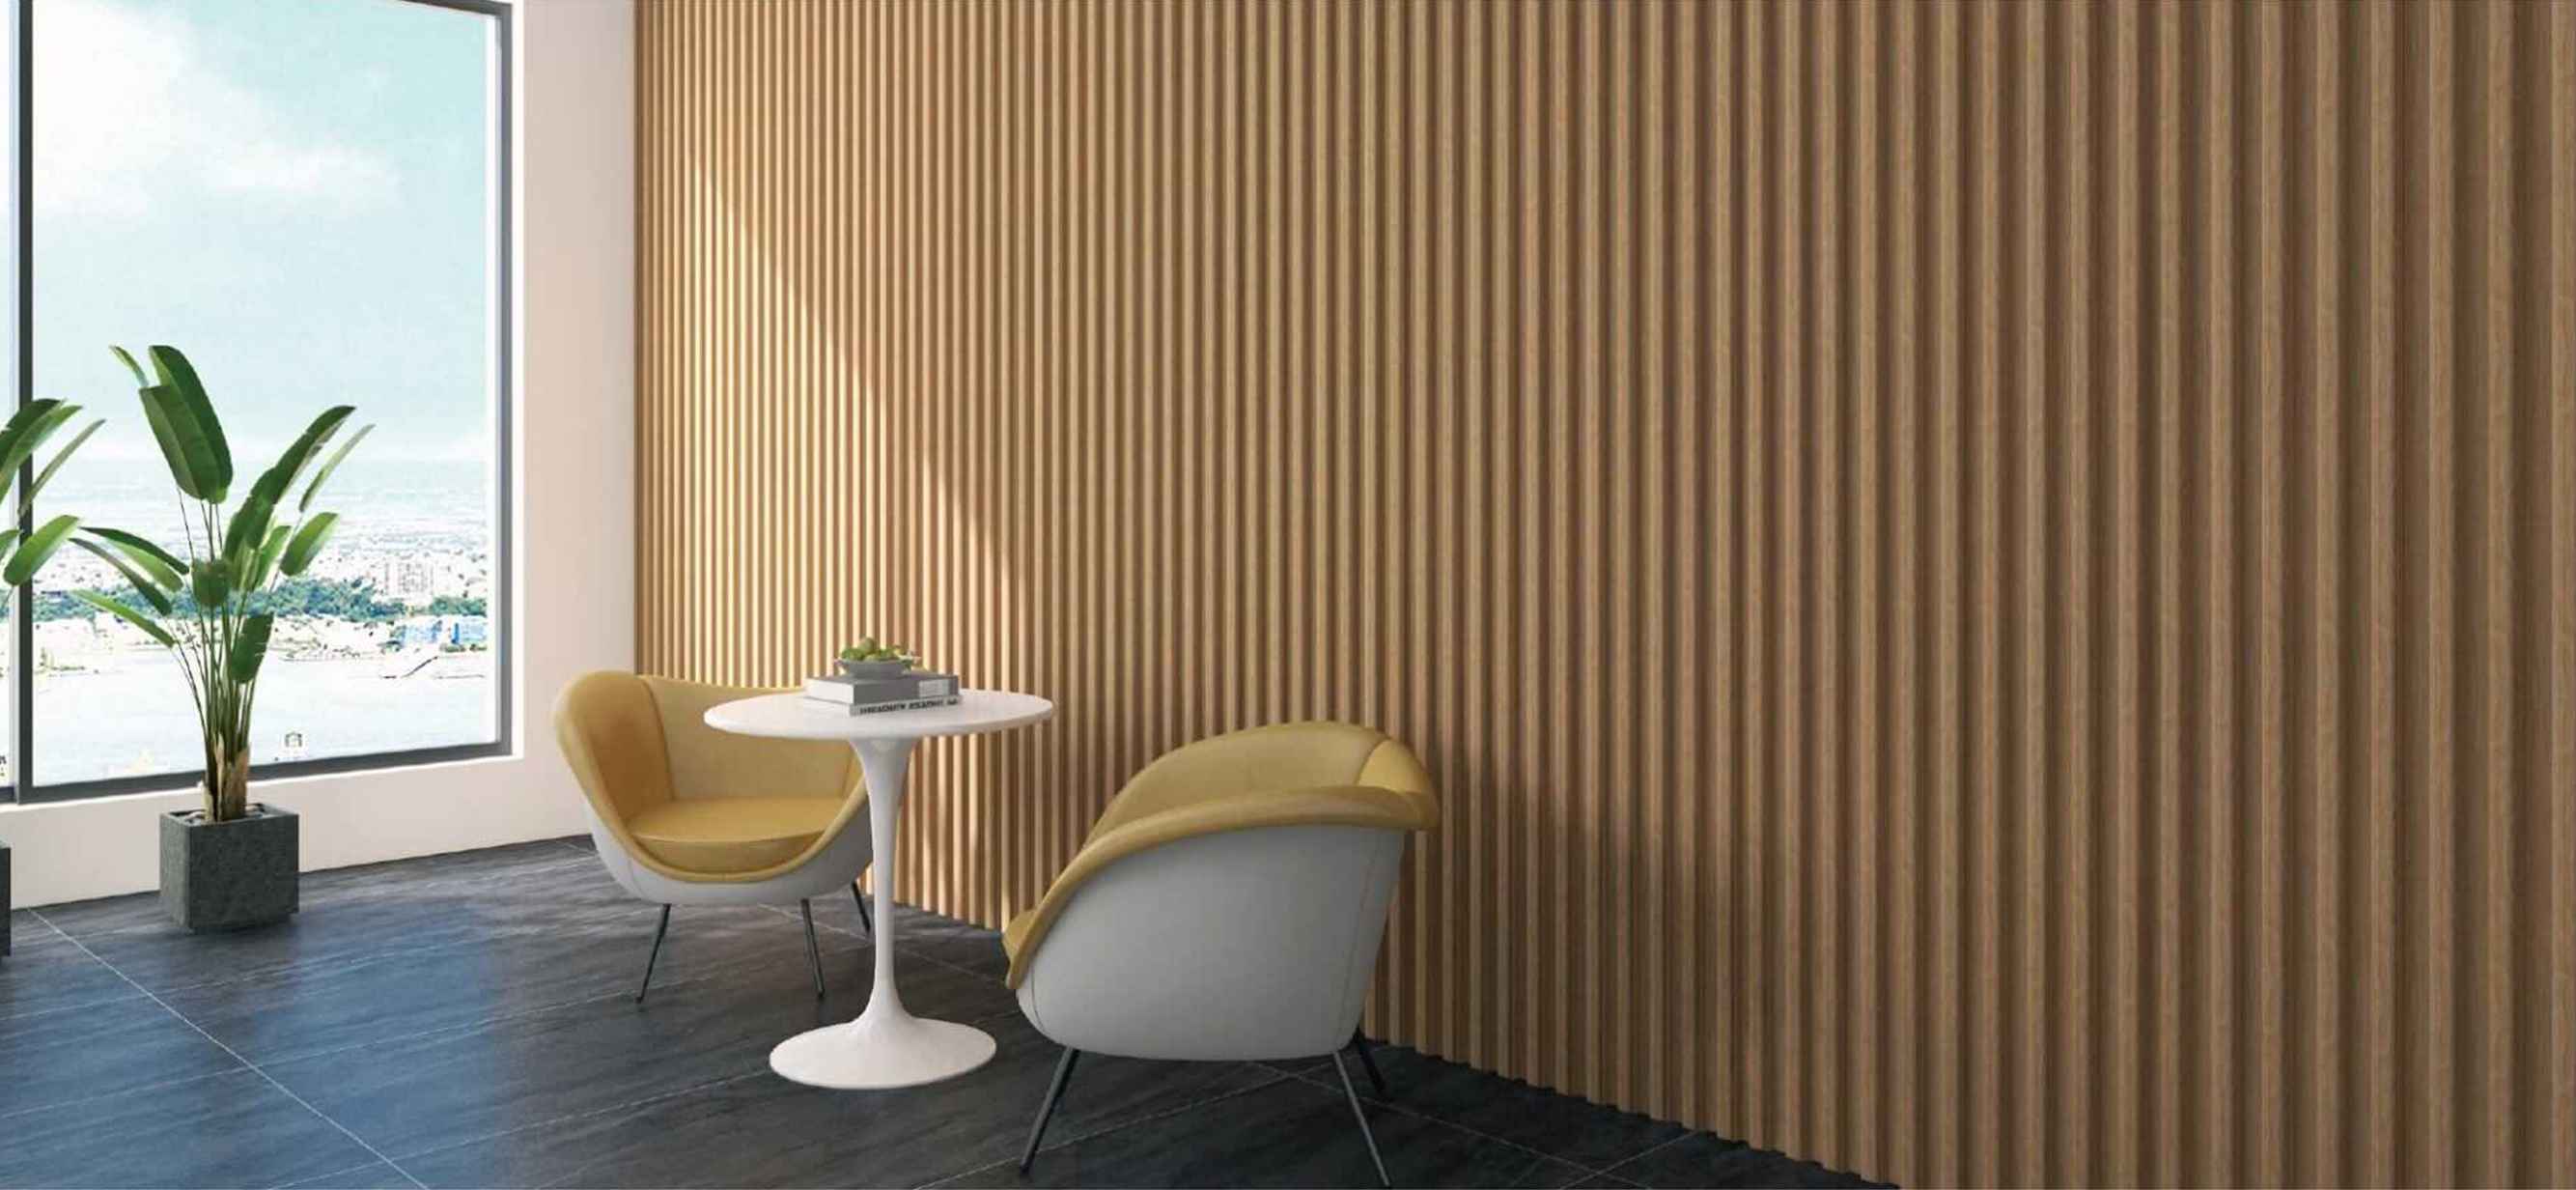 Mejore los espacios interiores contemporáneos con nuestros creativos y duraderos paneles para paredes interiores disponibles en una gama de modernos colores.